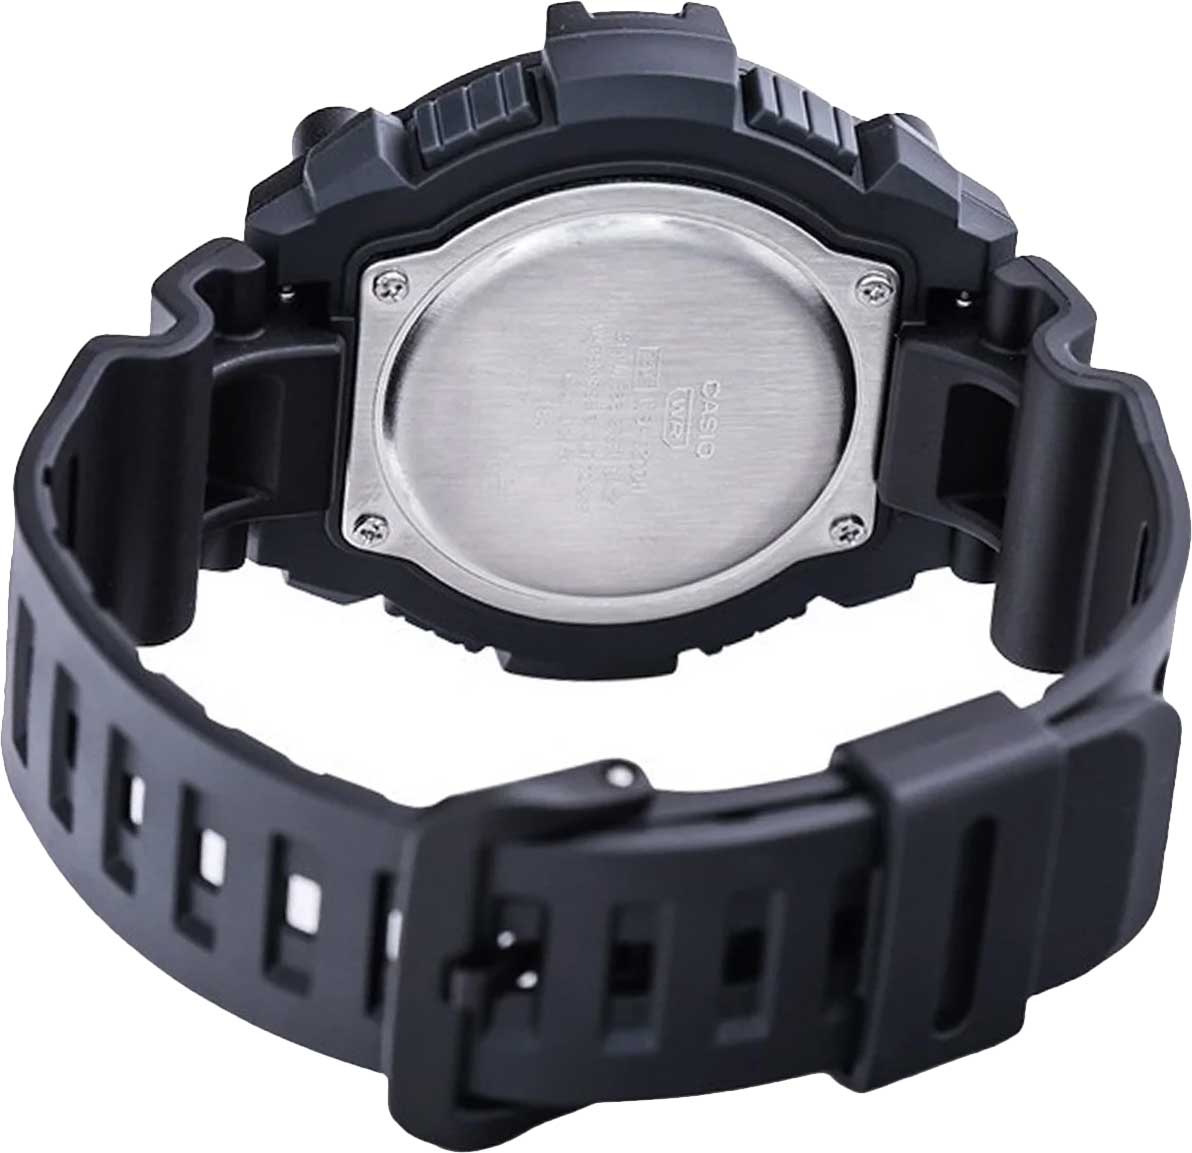 Наручные часы Casio описание Collection WS-1300H-1AVEF AllTime.ru купить цене, по в интернет-магазине — лучшей фото, характеристики